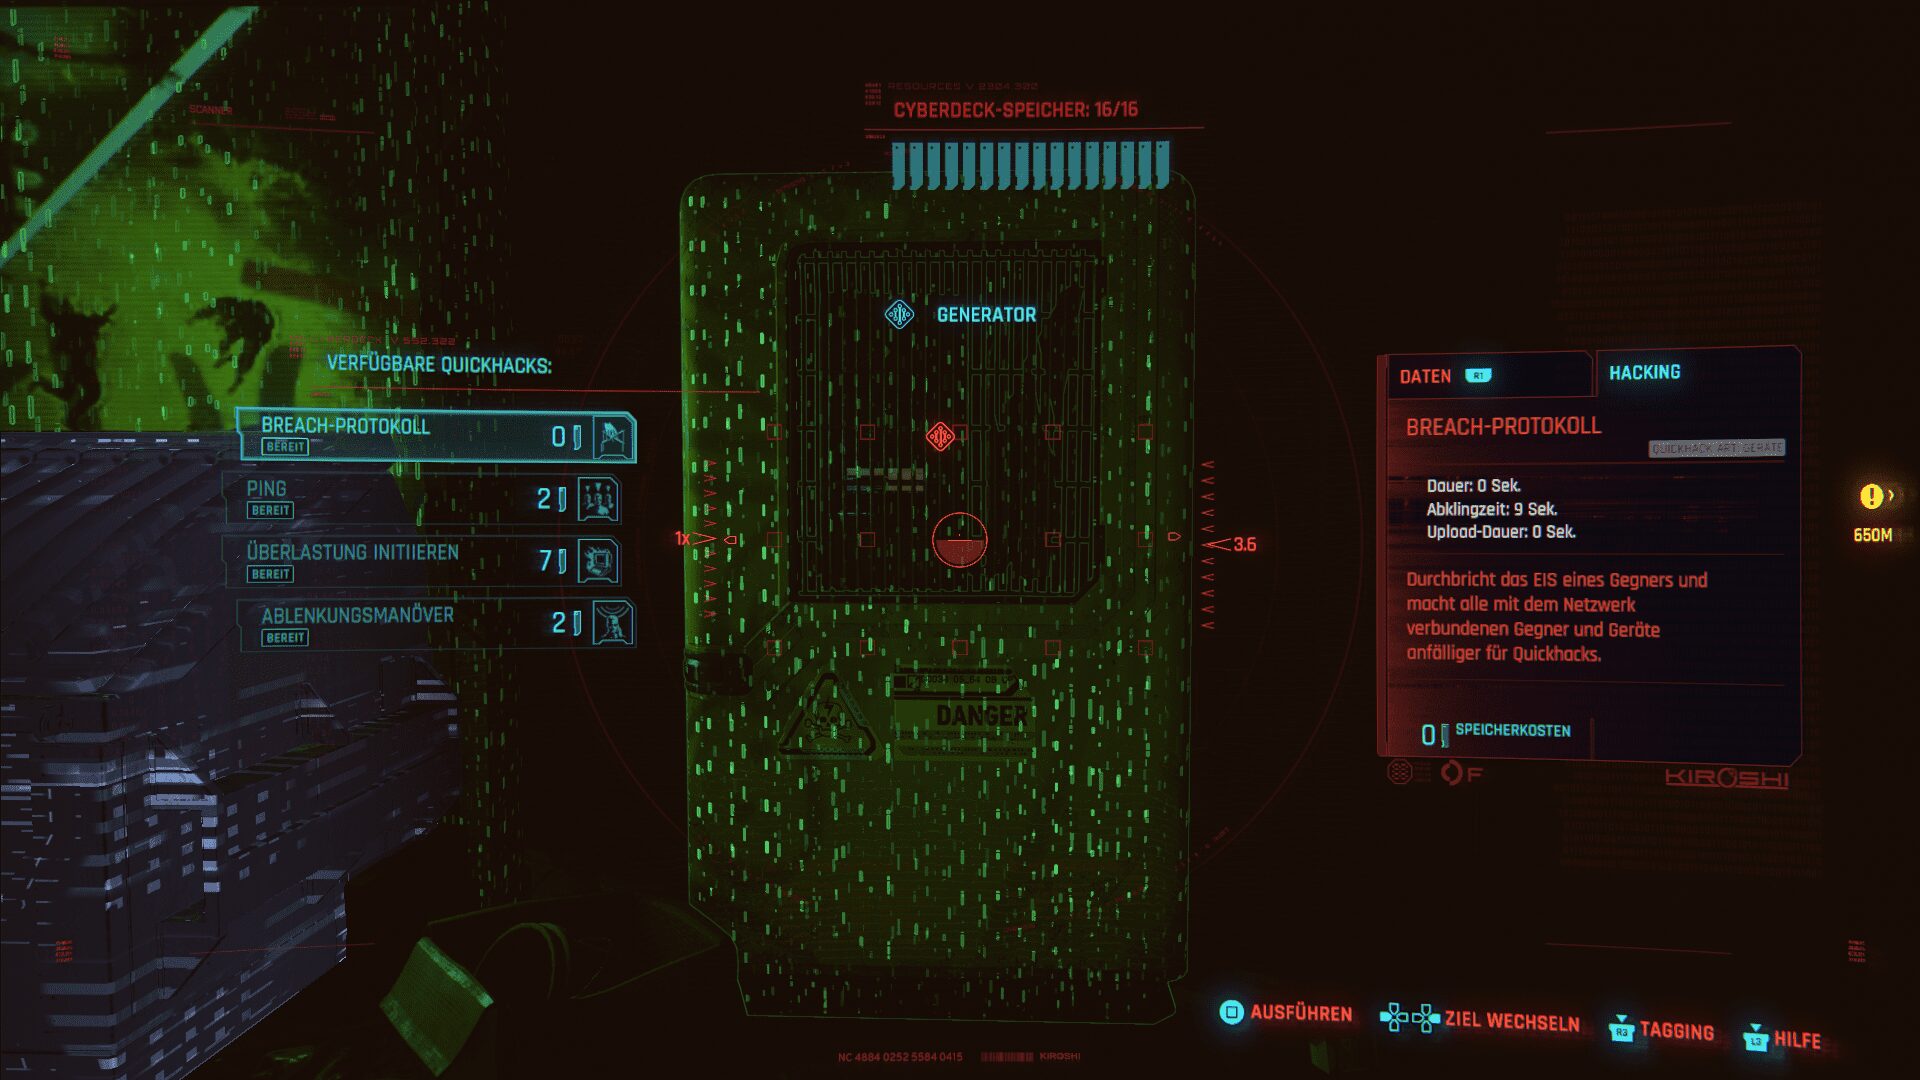 Cyberpunk 2077: Breach-Protokolle erklärt - Lösung (Guide)